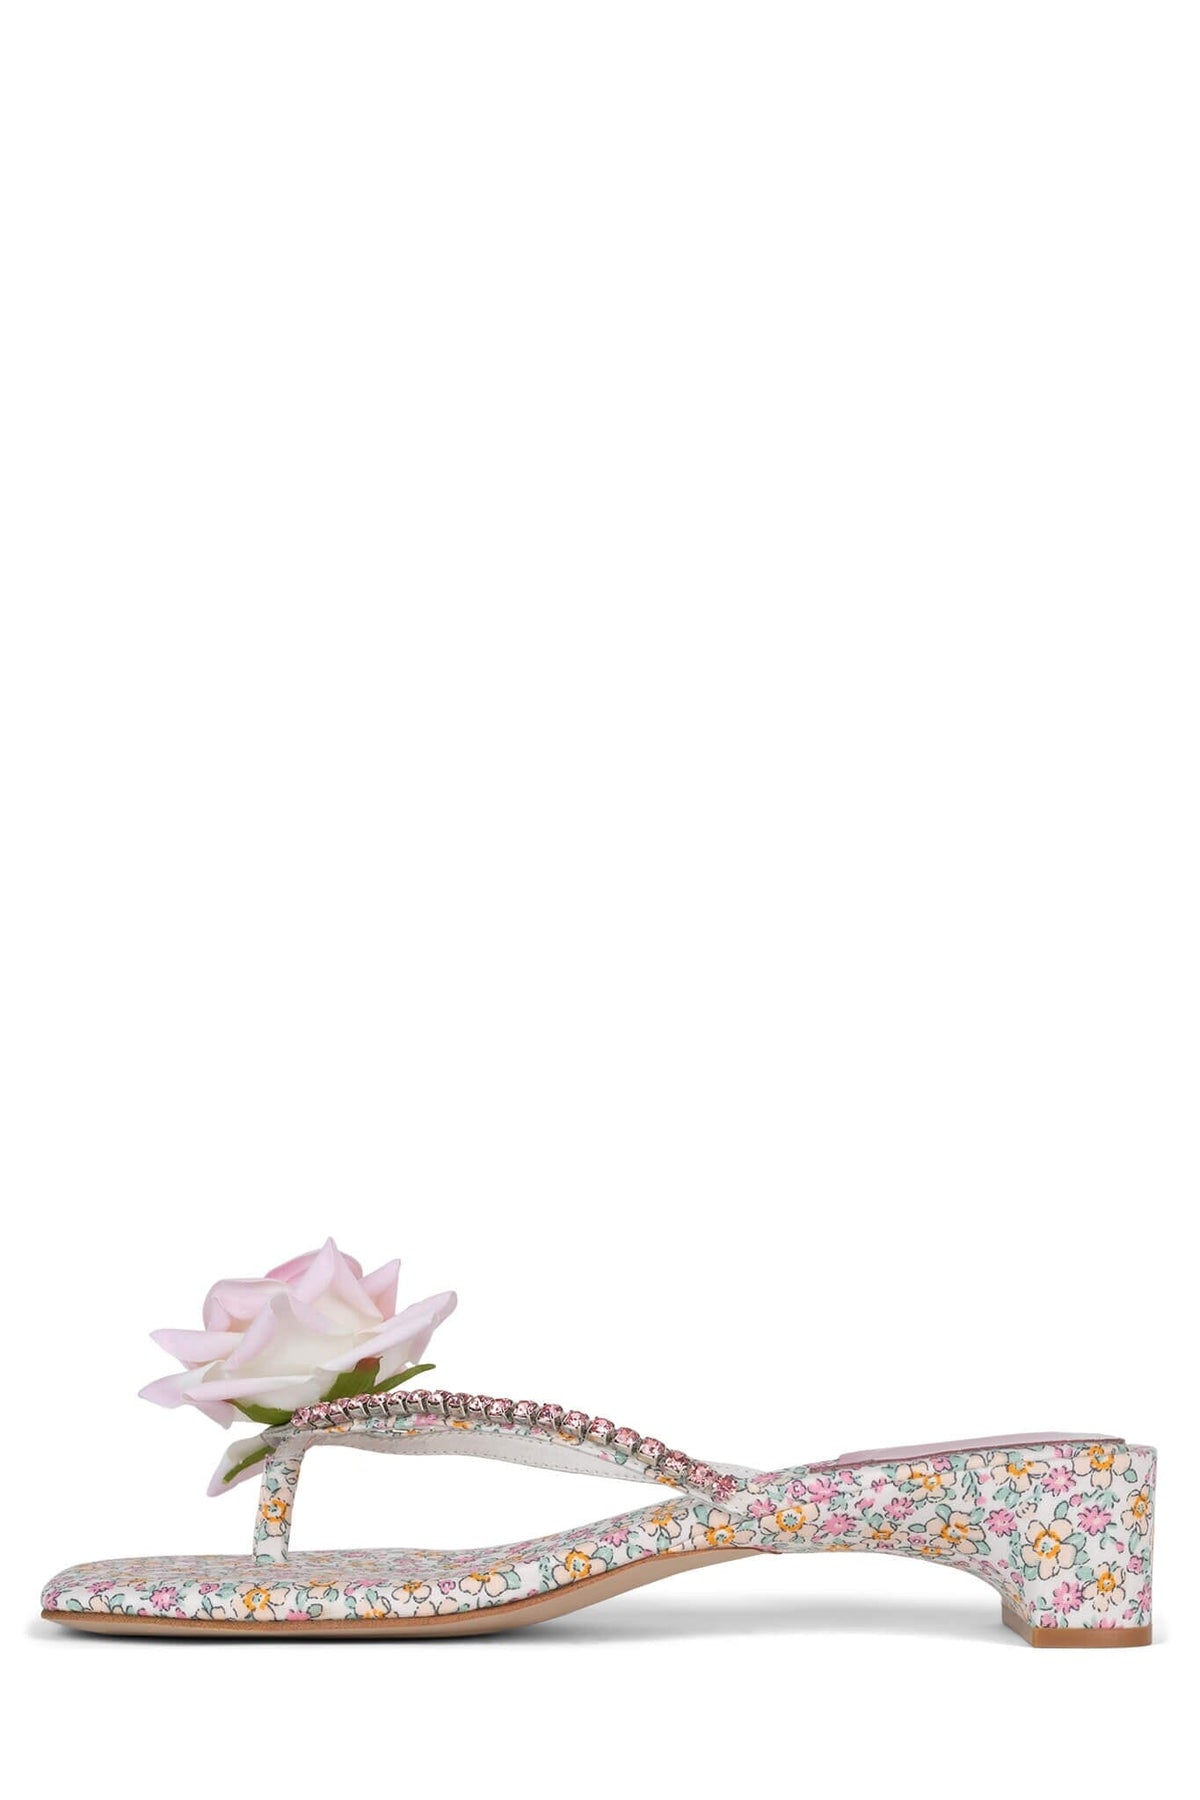 PRIMROSE Jeffrey Campbell Kitten Heel Sandal White Pink Multi